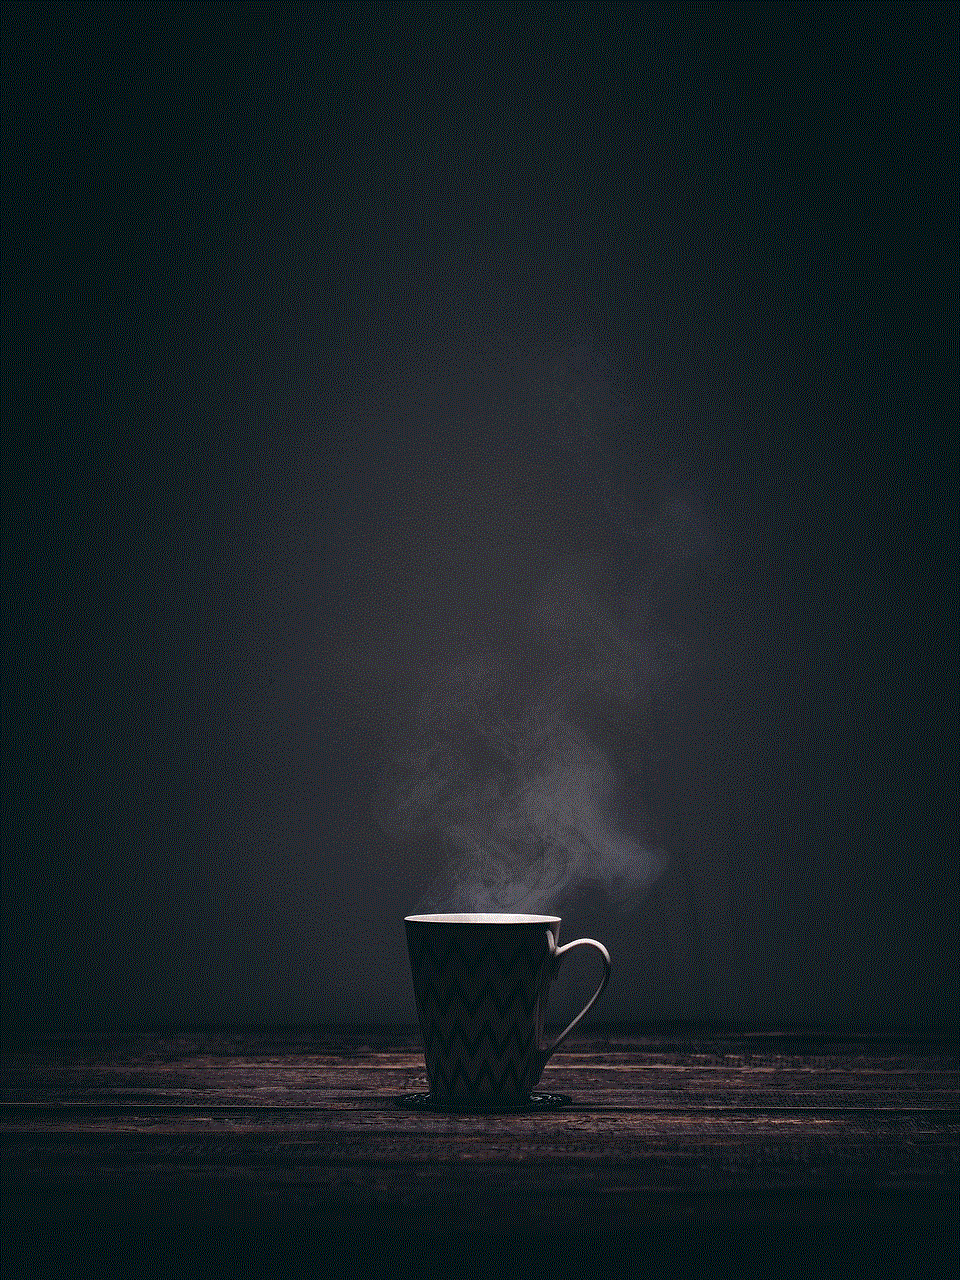 Cup Mug